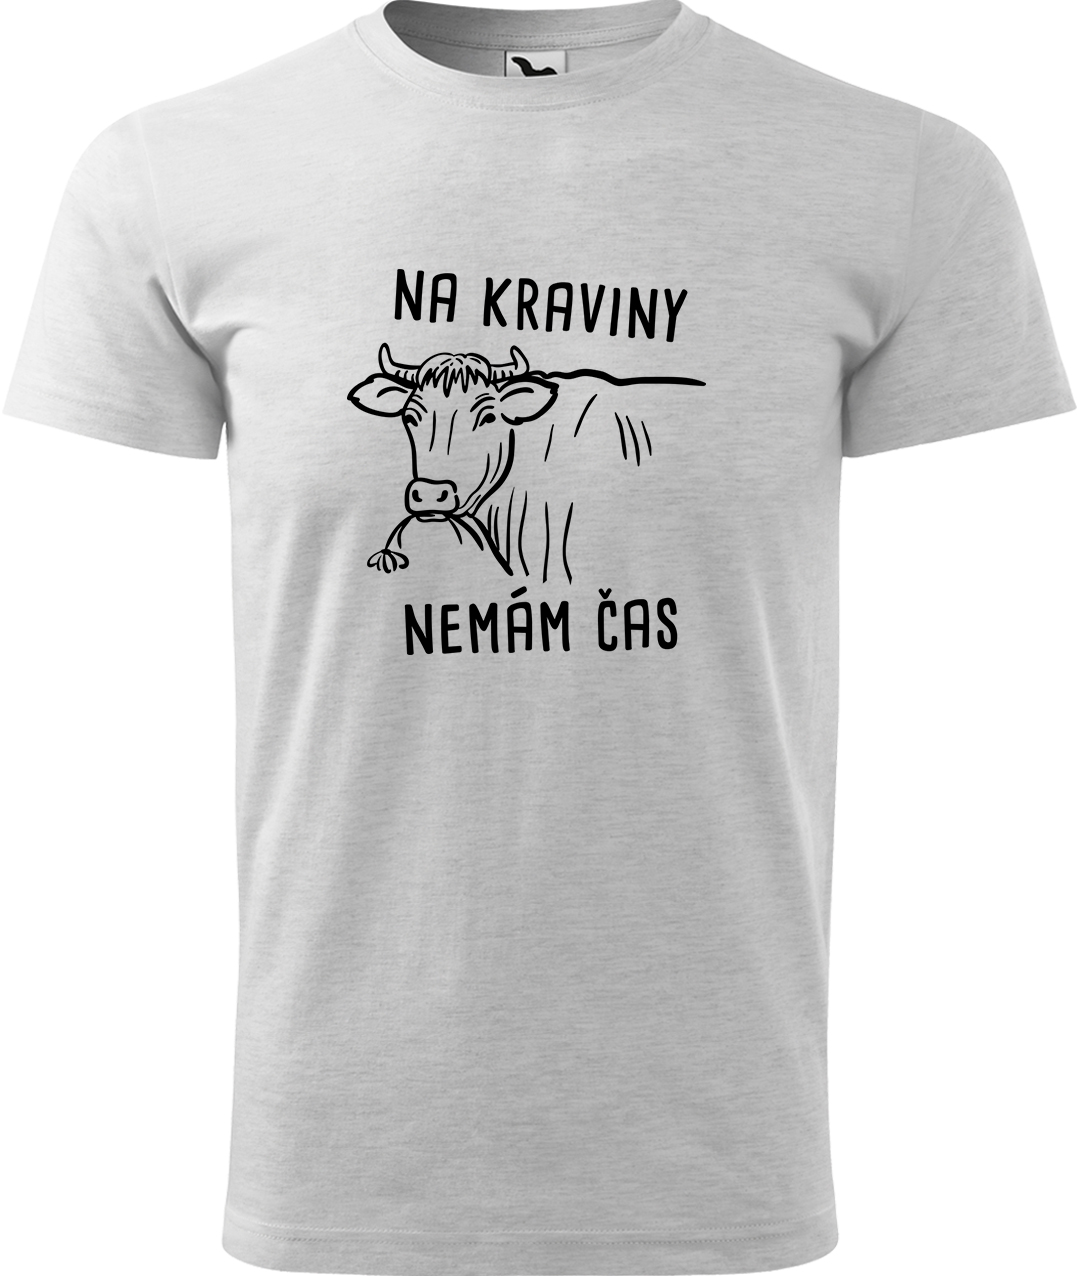 Pánské tričko s krávou - Na kraviny nemám čas Velikost: L, Barva: Světle šedý melír (03), Střih: pánský